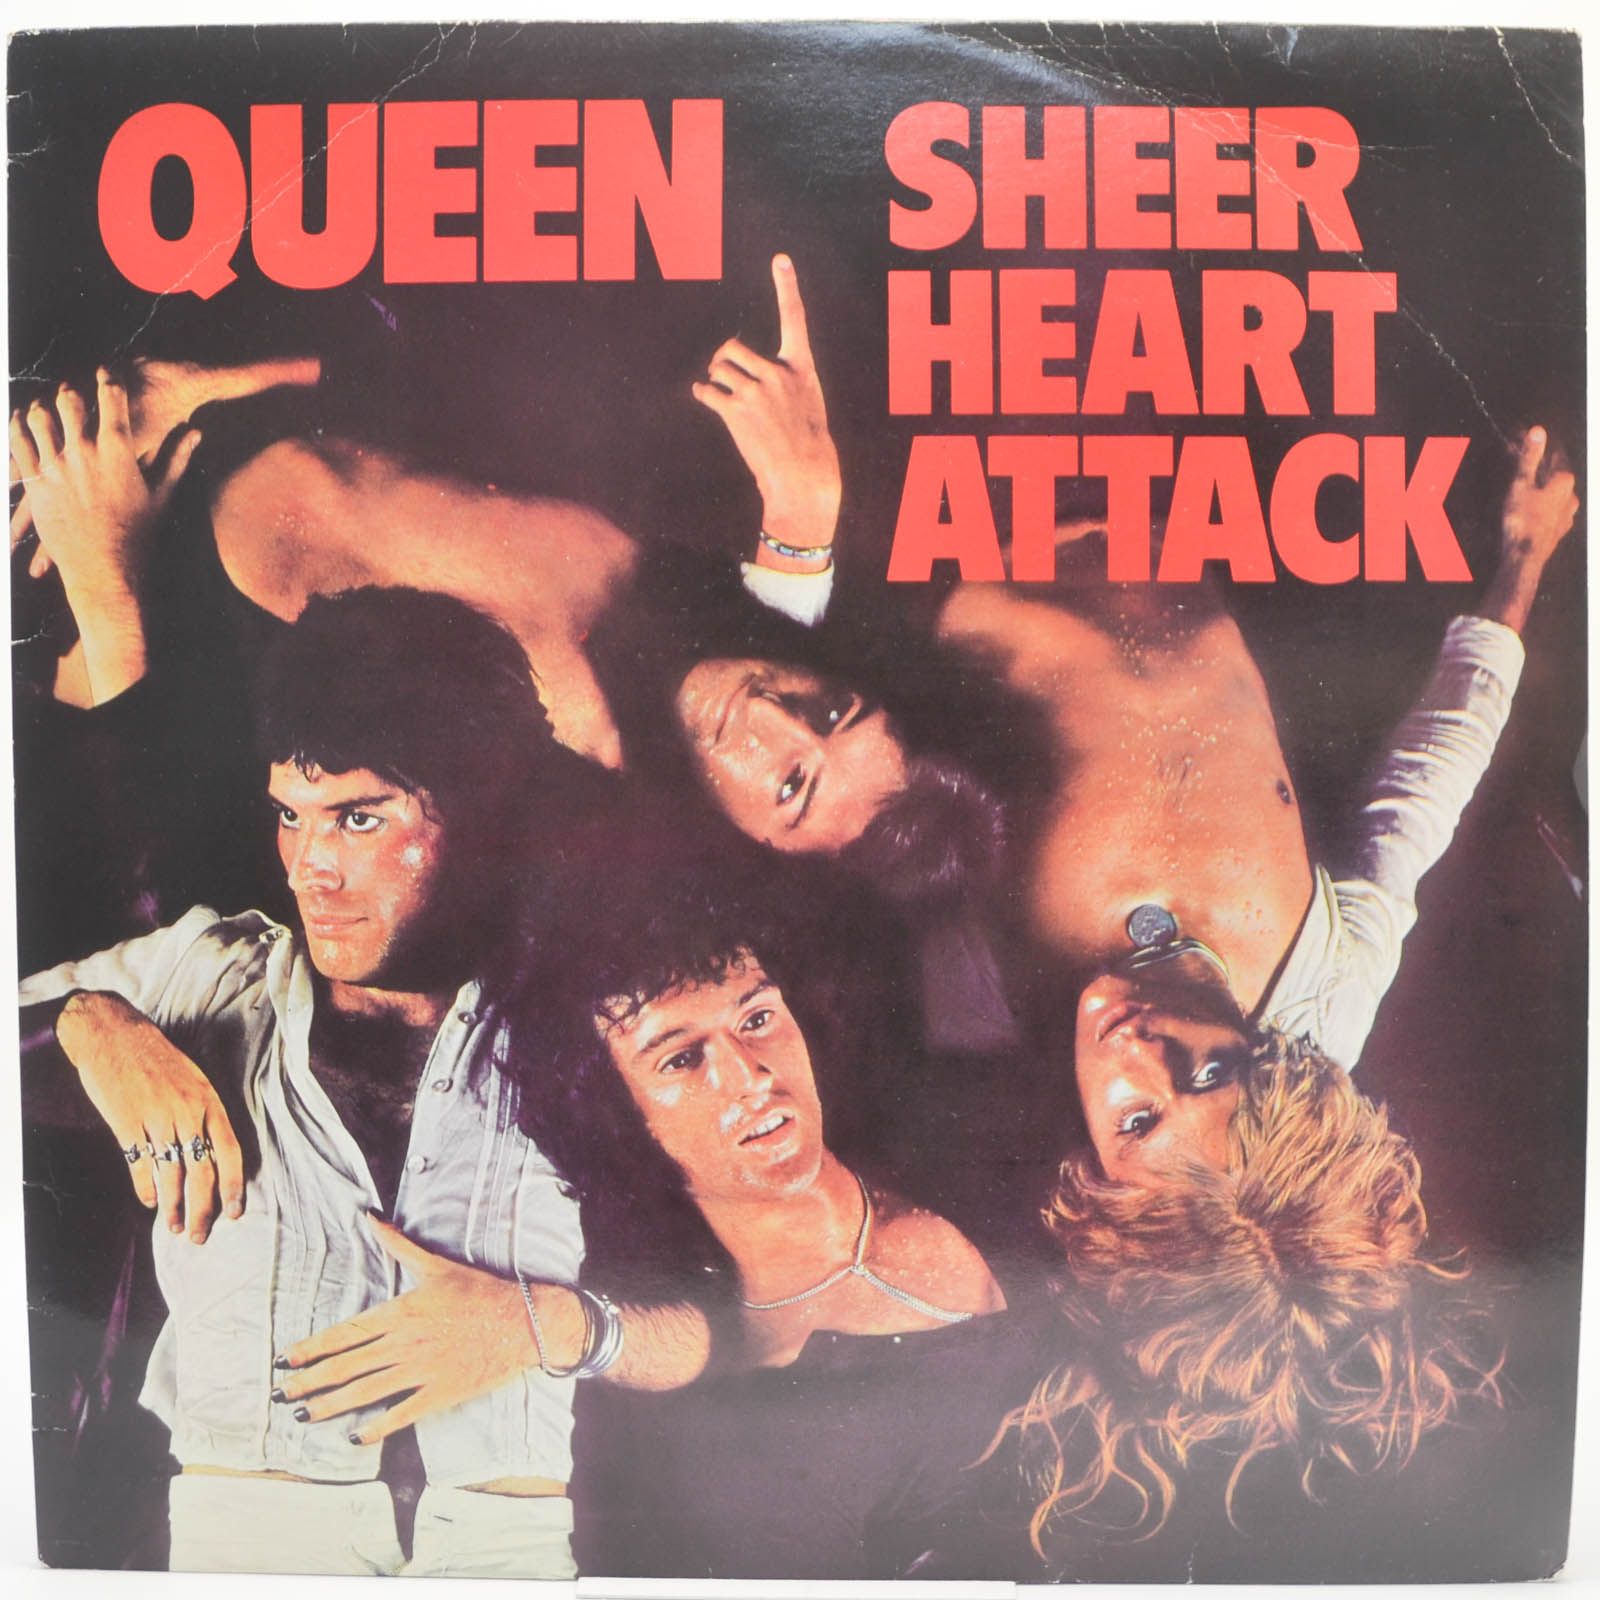 Queen — Sheer Heart Attack (UK), 1974